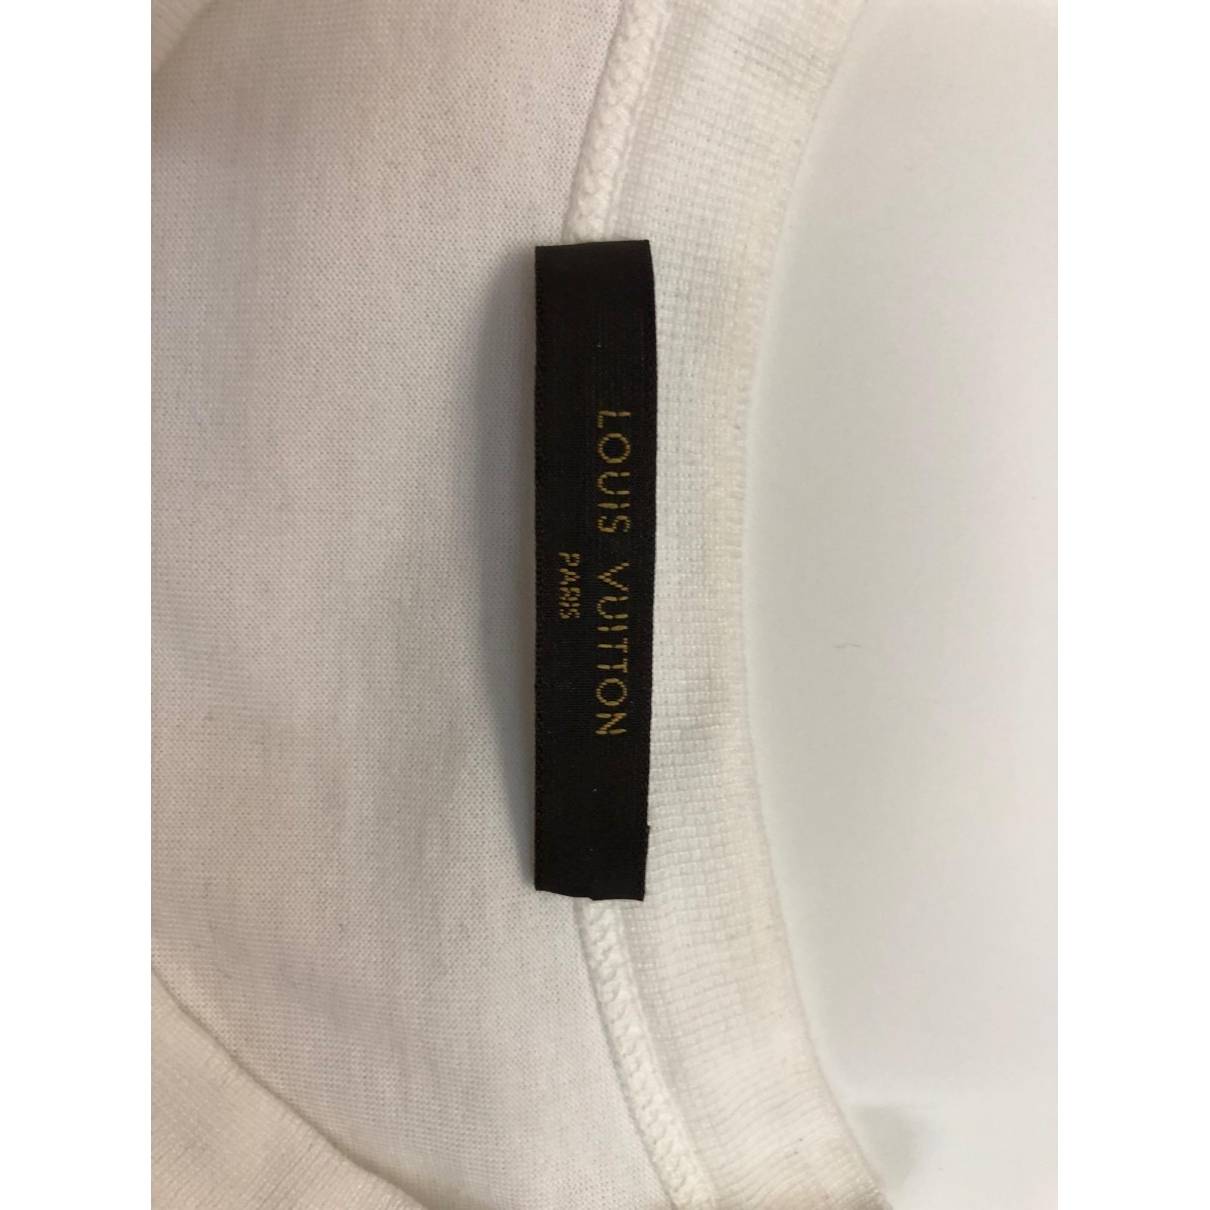 White cotton t-shirt Louis Vuitton x Supreme White size L